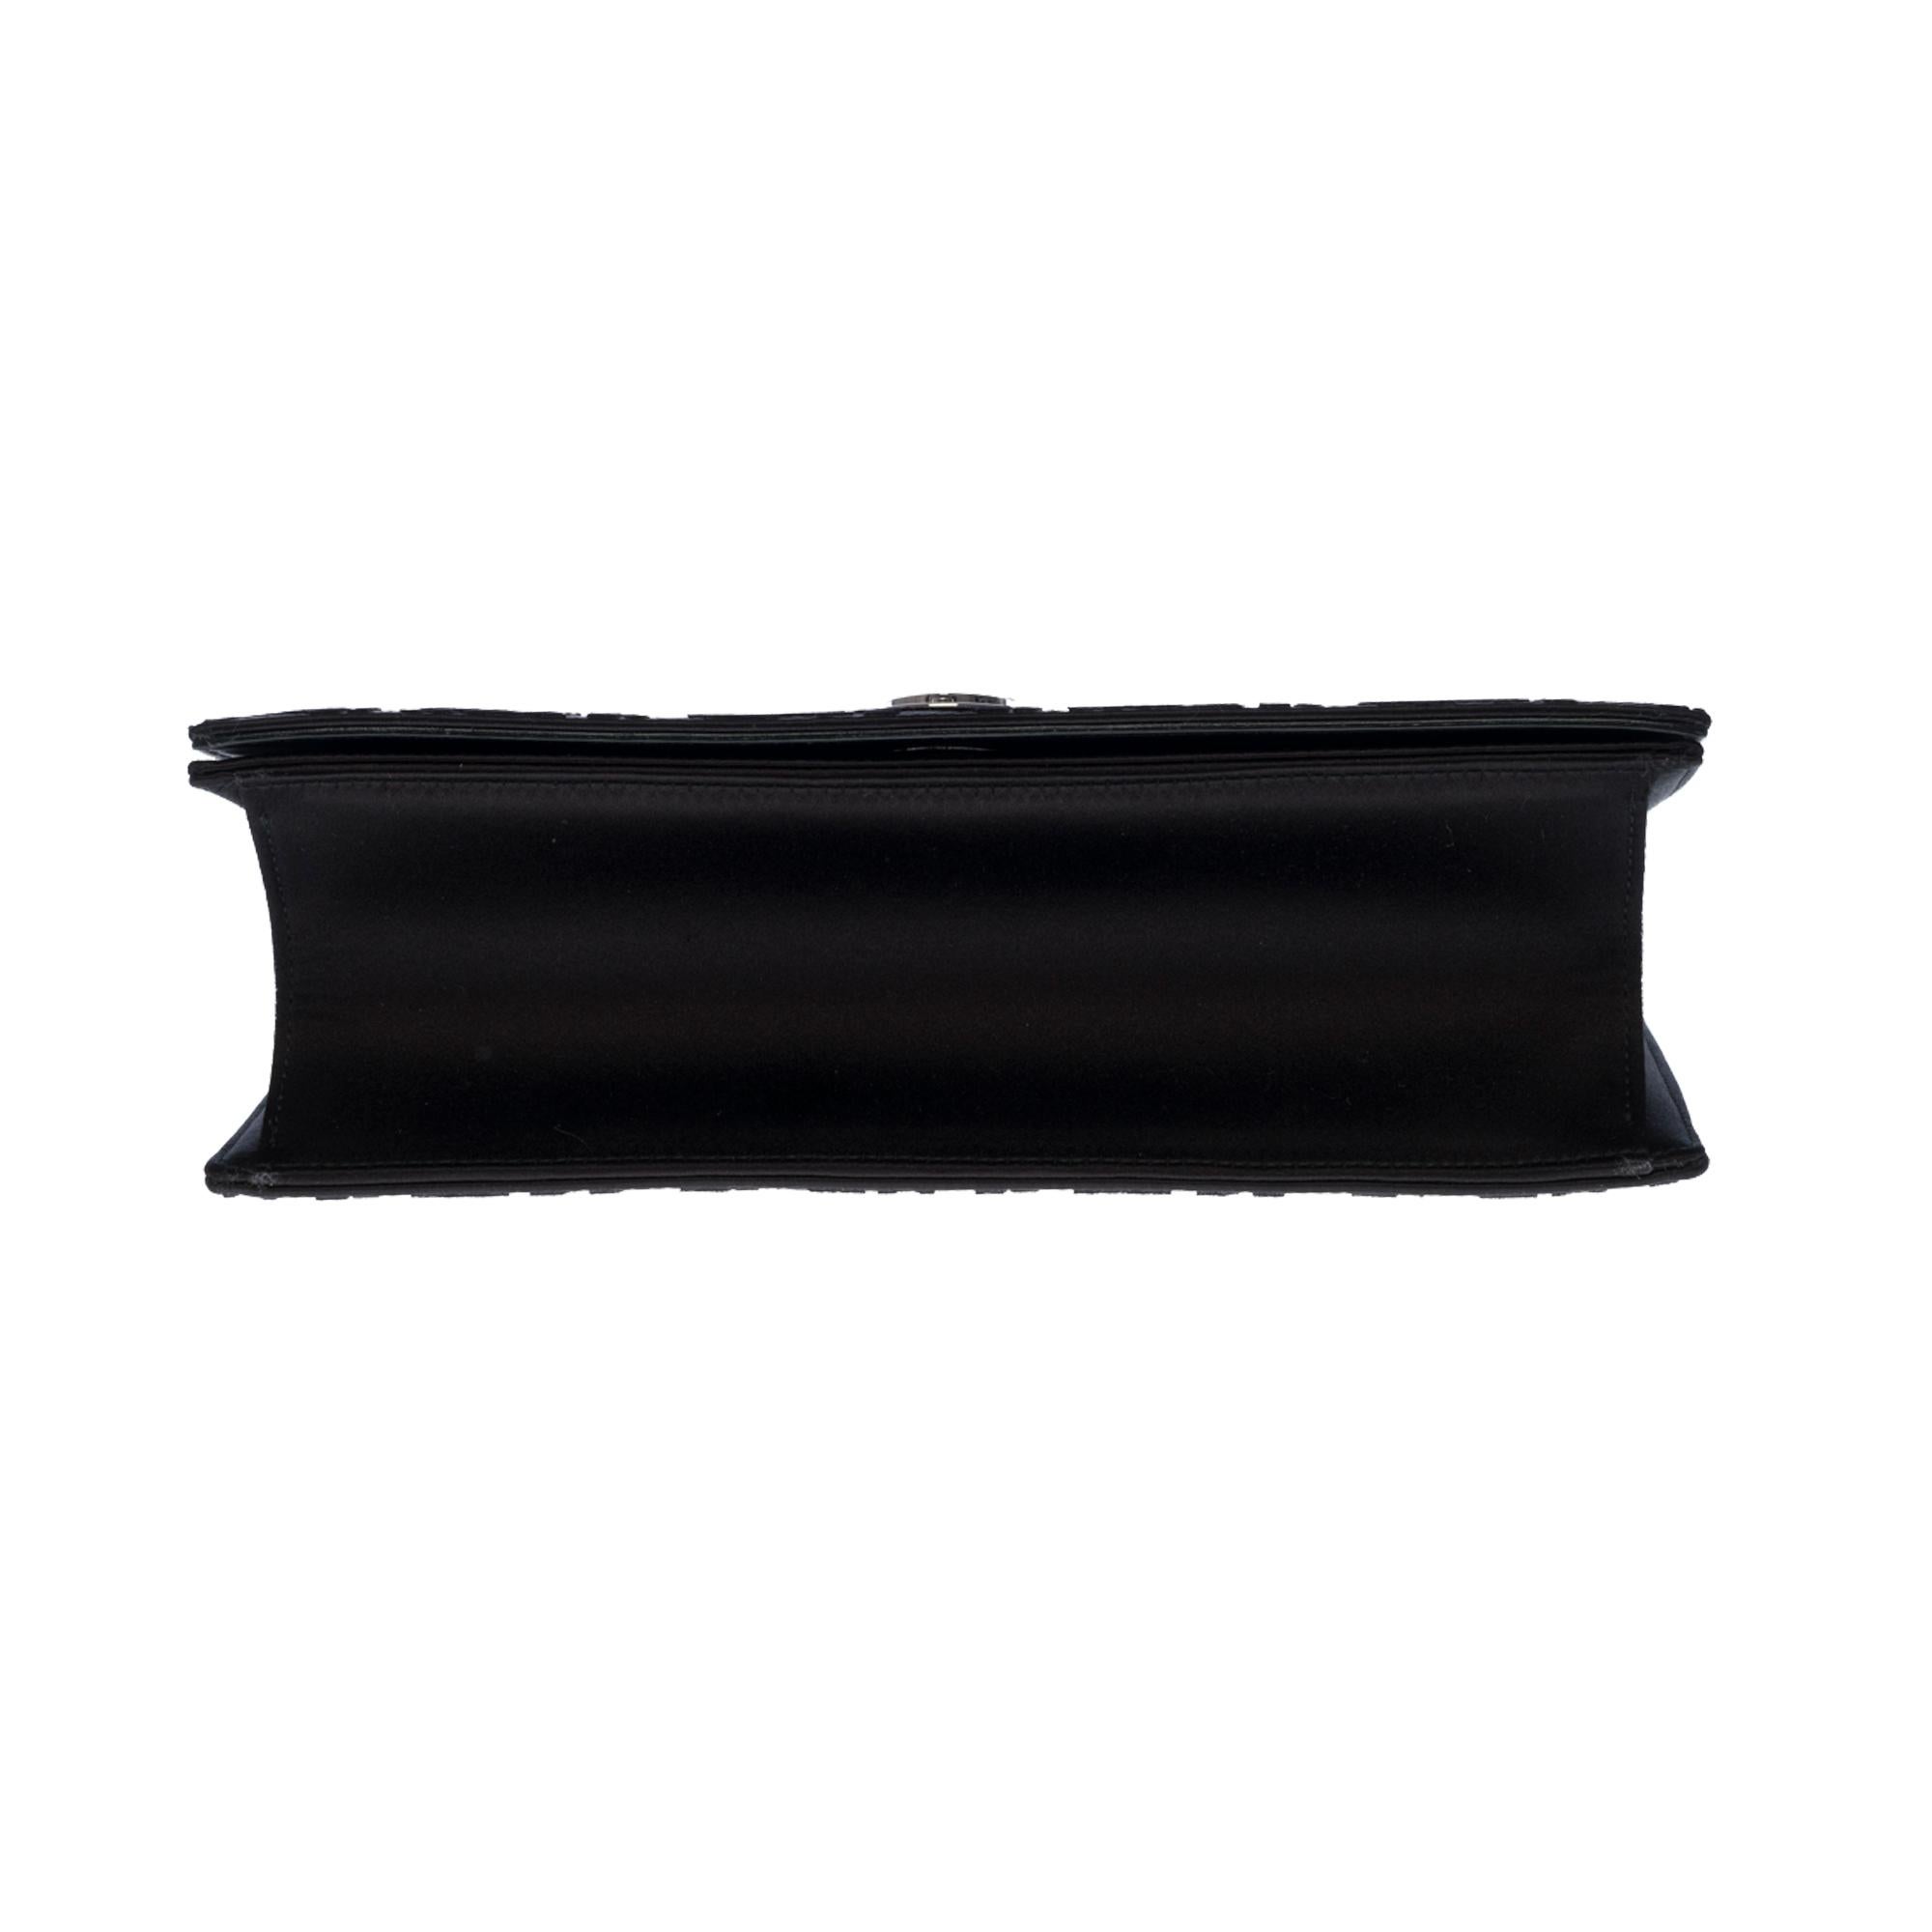 Christian Dior Diorama Shoulder bag in black velvet and crystals, SHW 3